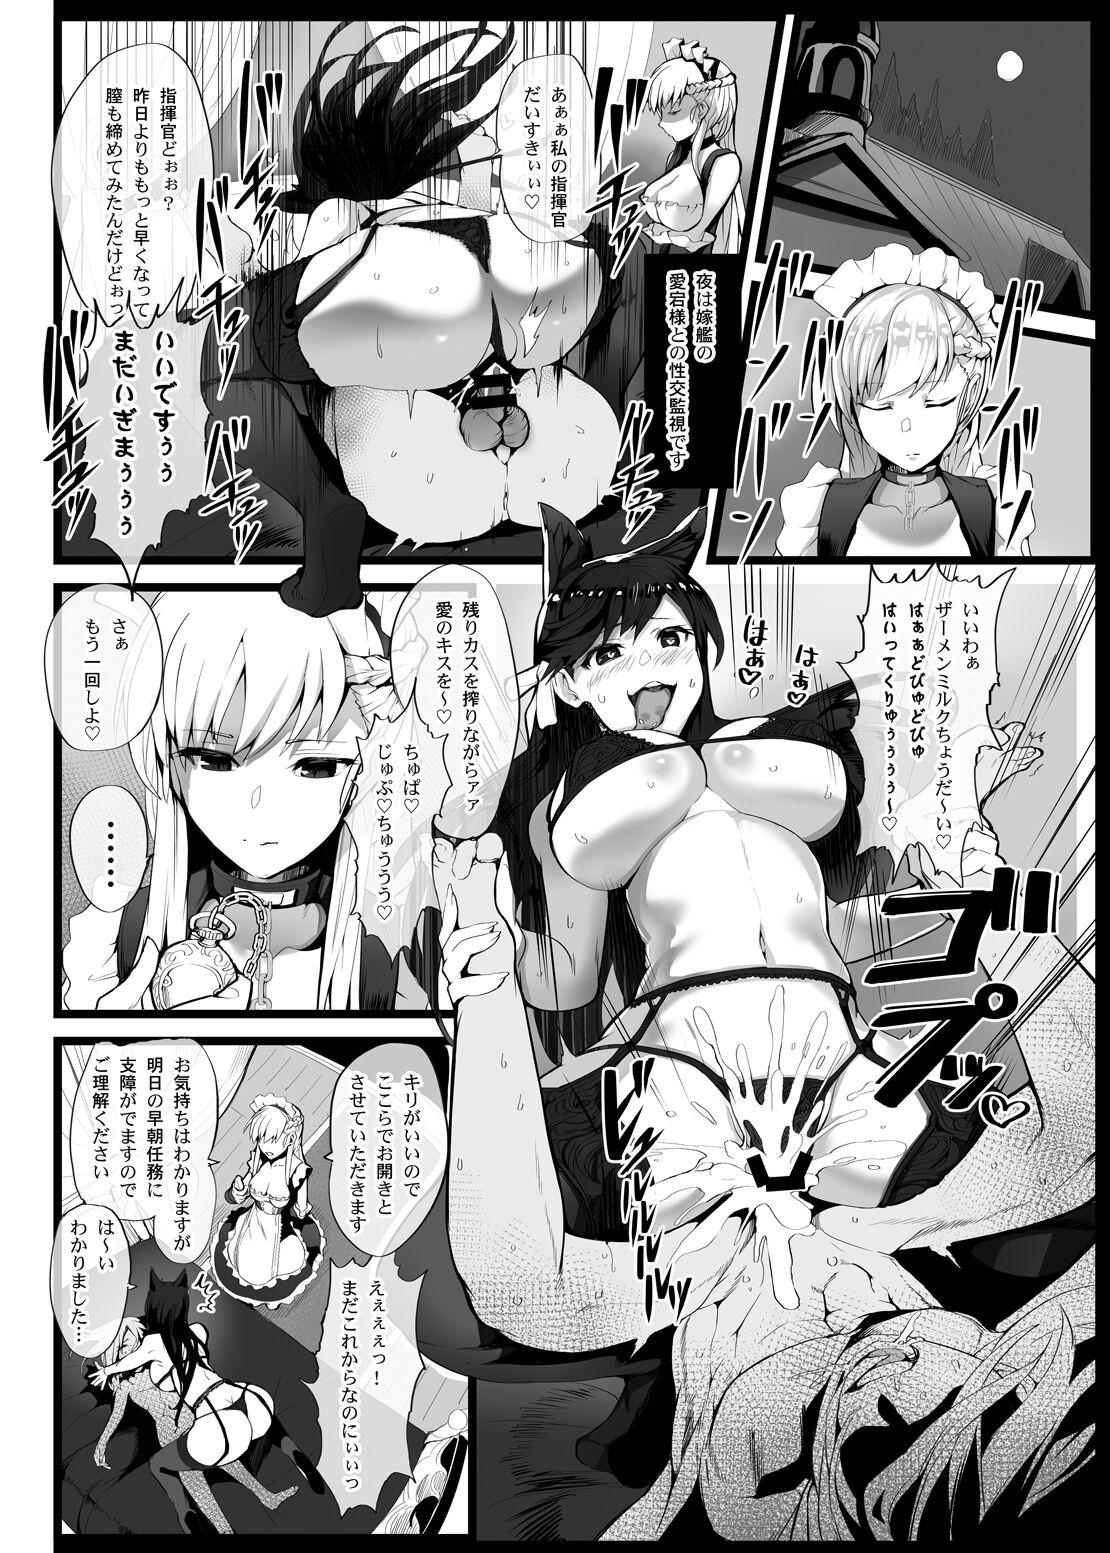 Tetas Mukakin Shirei ni Yubiwa o Kawaseru Saigo no Houhou 2 - Azur lane Blowjob Porn - Page 11